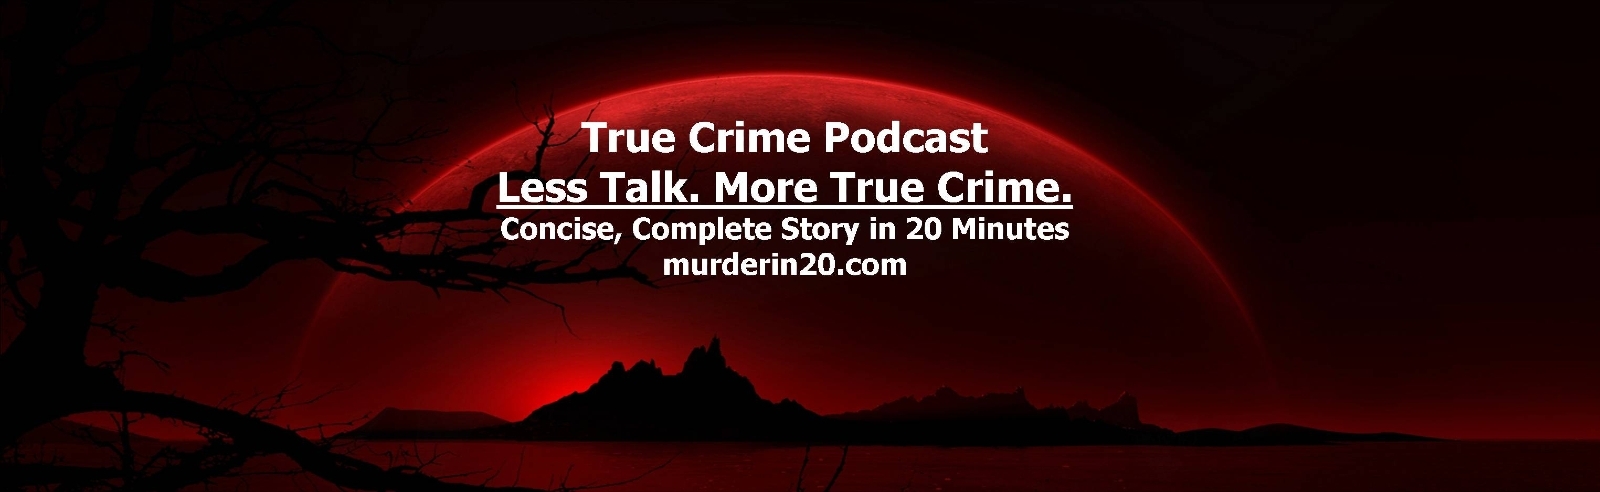 Murder in 20 - True Crime Podcast